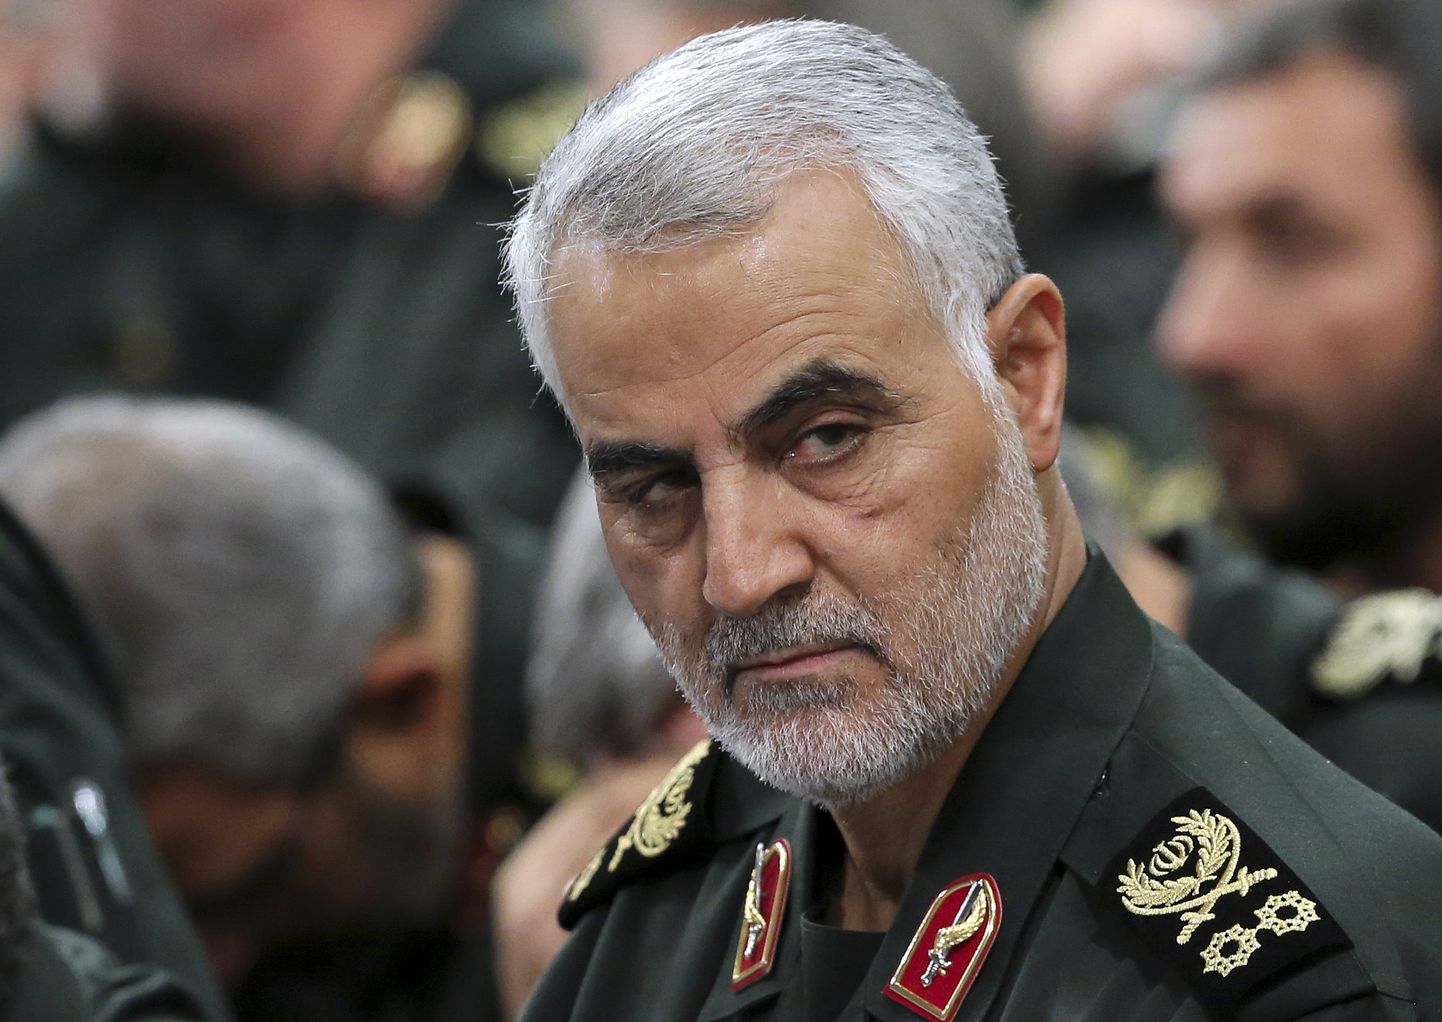 Iraani kindralmajor Qassem Soleimani, kes hukkus USA raketirünnakus